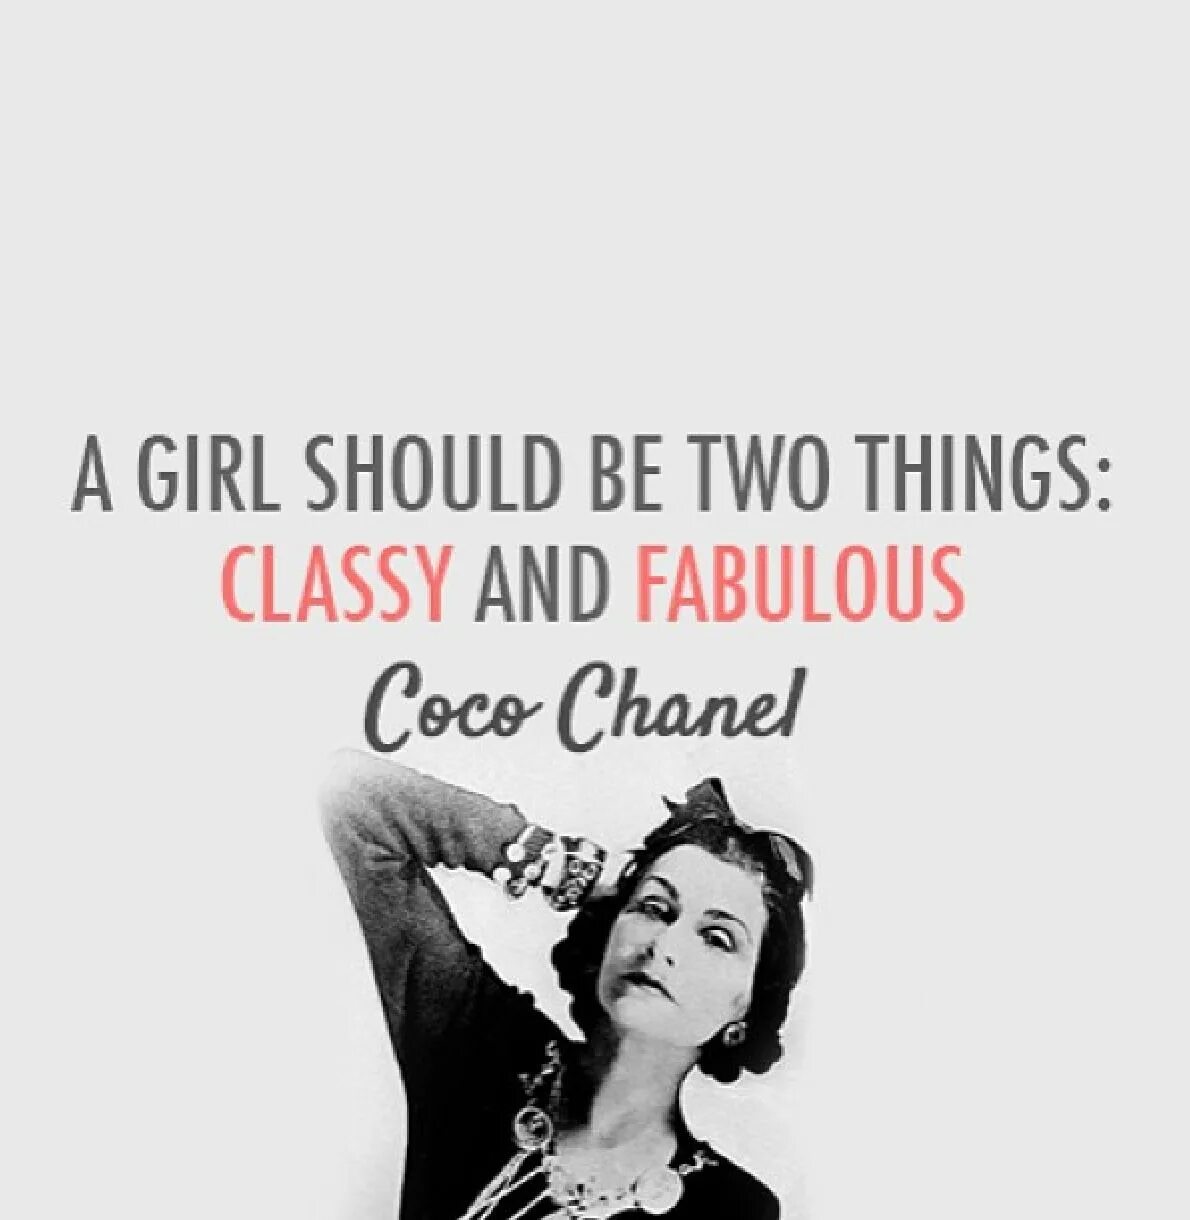 Коко на английском с английскими субтитрами. Coco Chanel quotes. Фразы Коко Шанель на французском. Цитаты модельеров. Цитаты дизайнеров одежды.